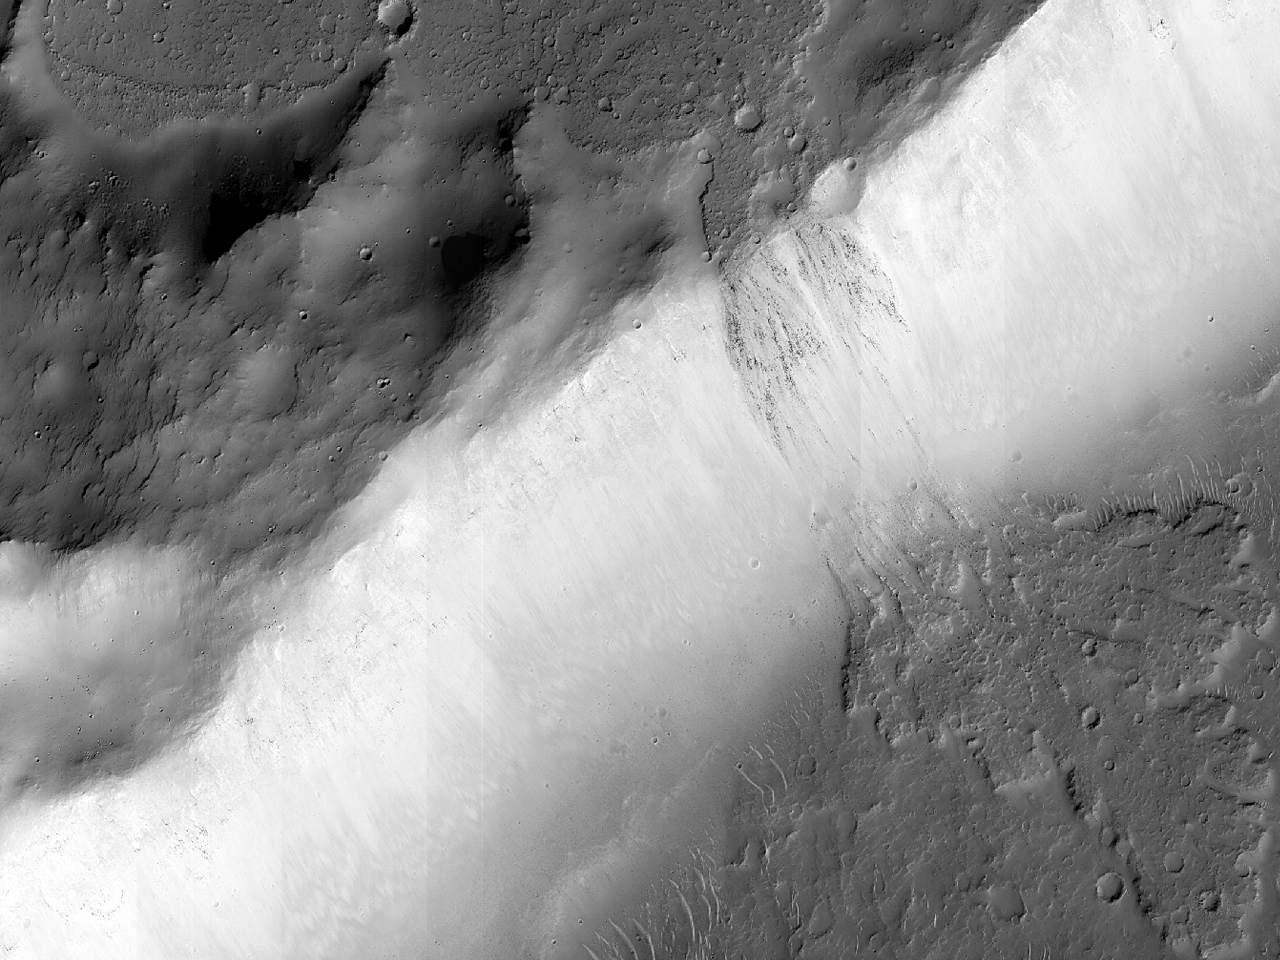 Lafafluo verŝita trans kratera muro sur krateran plankon en Daedalia Planum